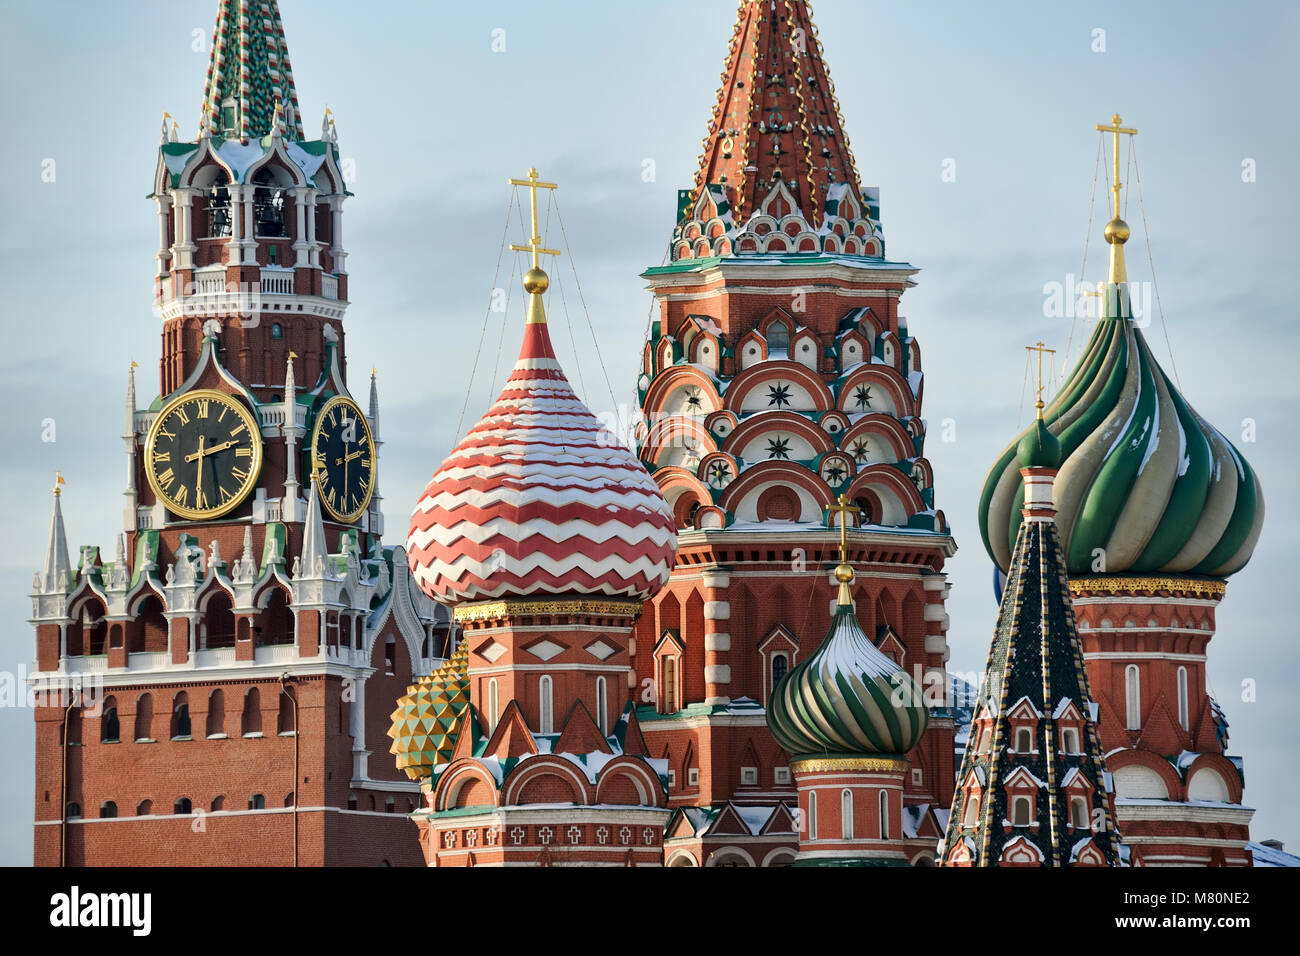 Moscou, Russie - Tour de l'horloge du Kremlin et oignon dômes de la cathédrale Saint-Basile en hiver Banque D'Images